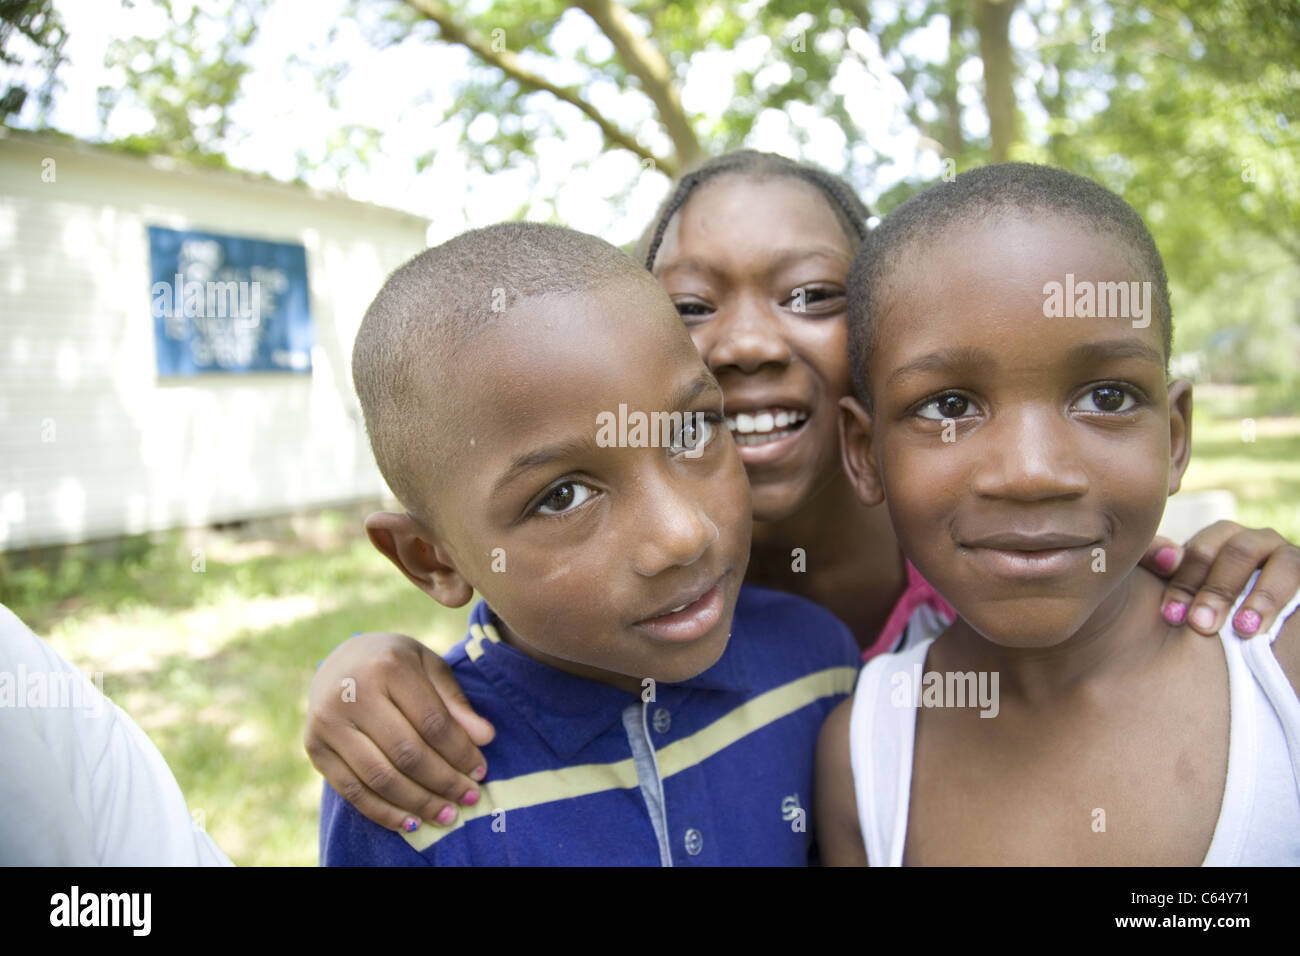 Portraits of African American children in the poverty stricken, rundown Brightmoor neighborhood of Detroit, MI. Stock Photo